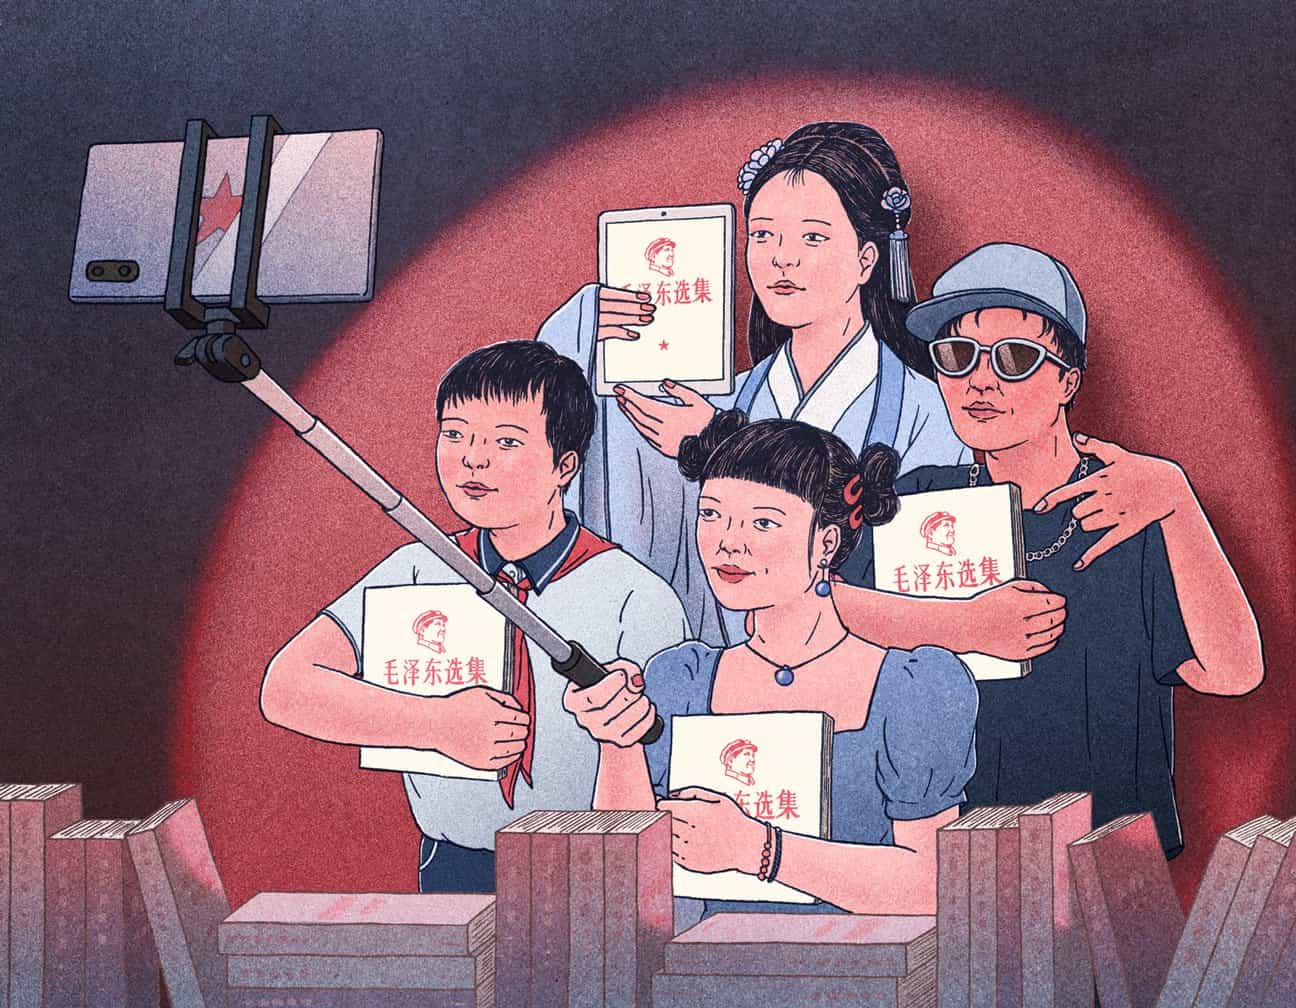 Xinmei Liu se inspira en anuncios vintage de Shanghái y carteles de propaganda china